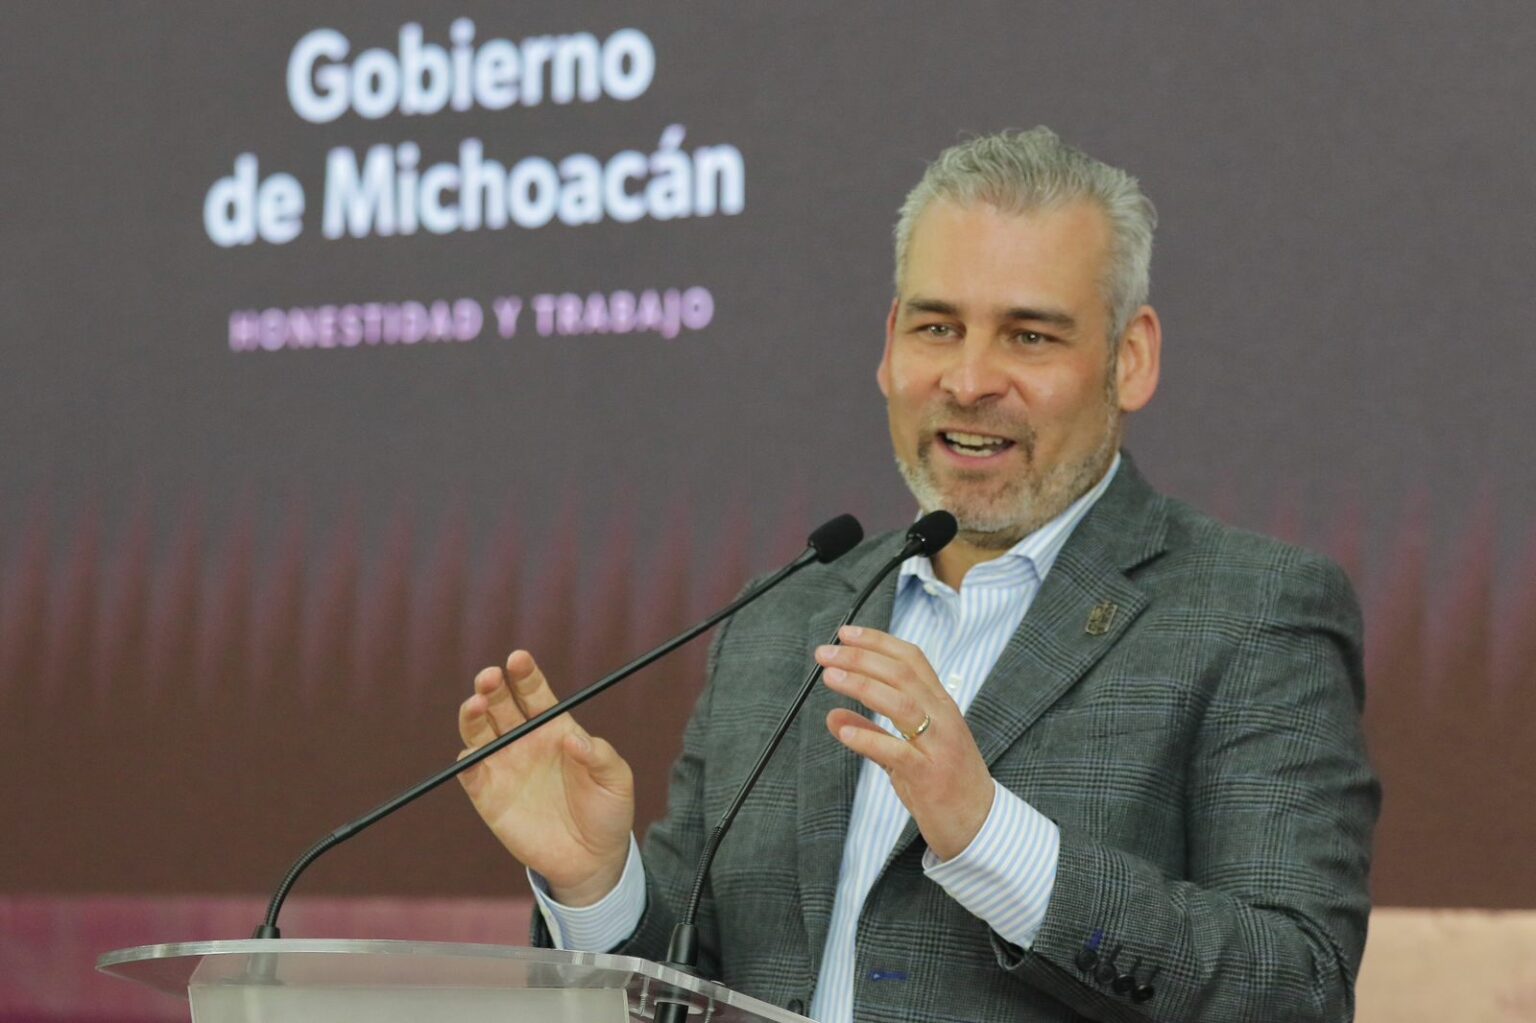 Aumenta 3.4 aprobación ciudadana del gobernador de Michoacán